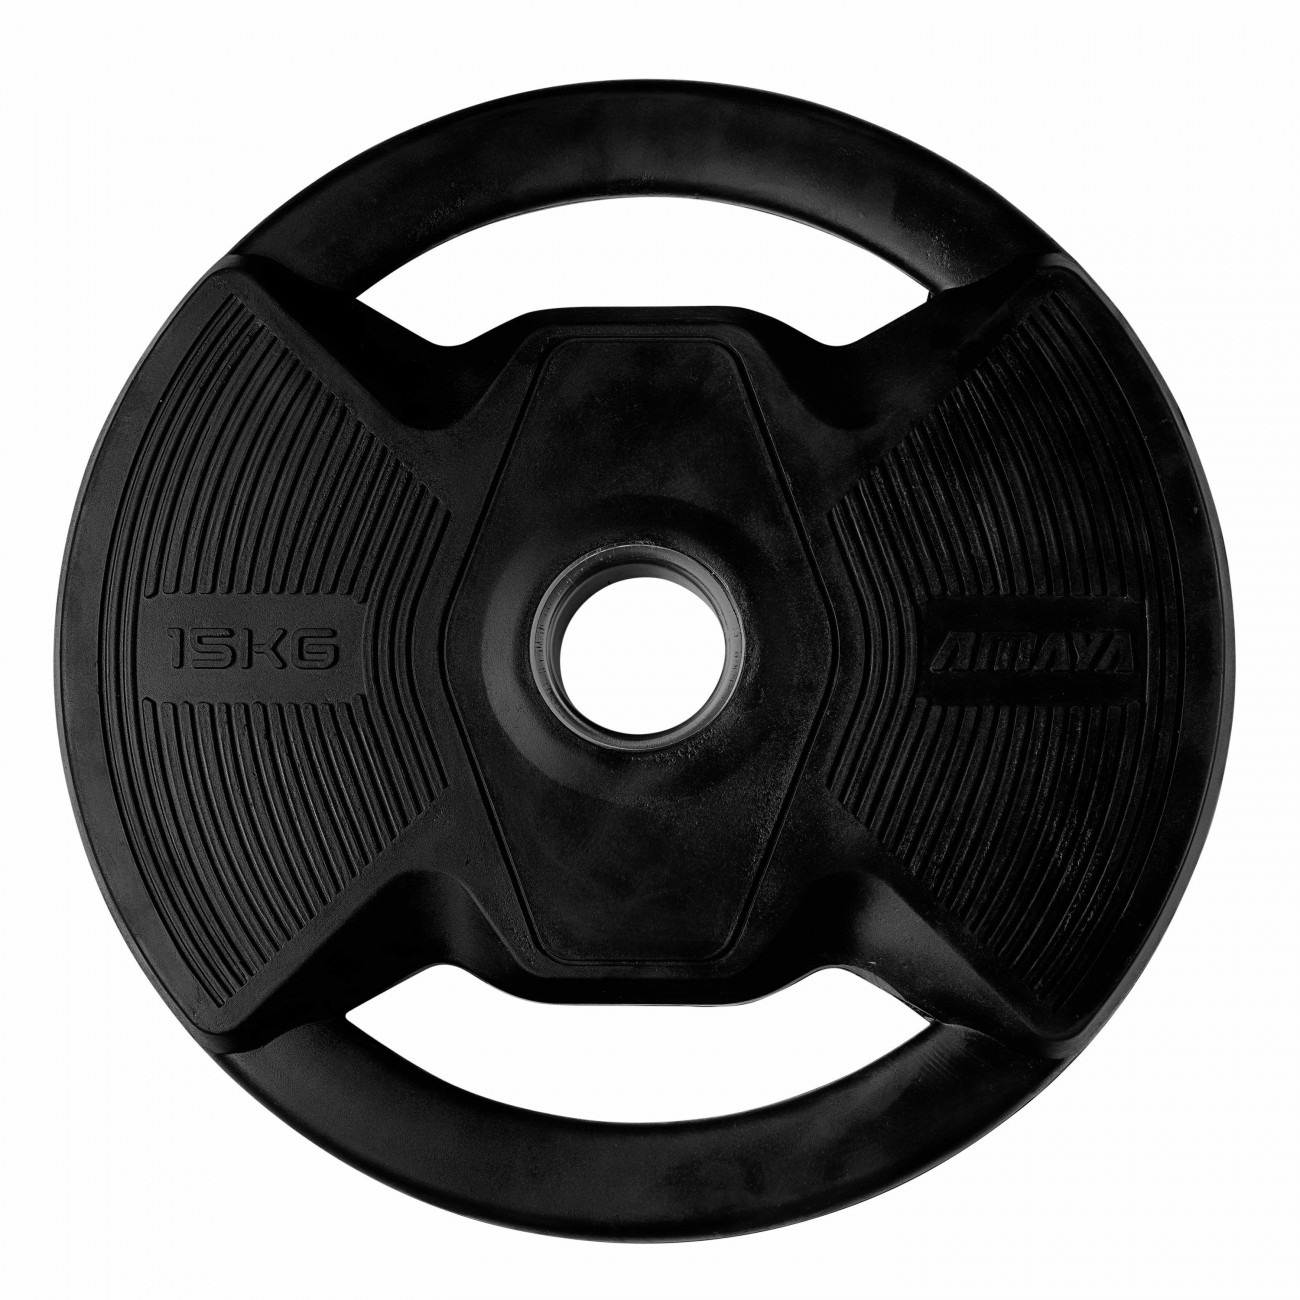 plato-olimpico-pro-con-agarres-black-rubber-negro (5)